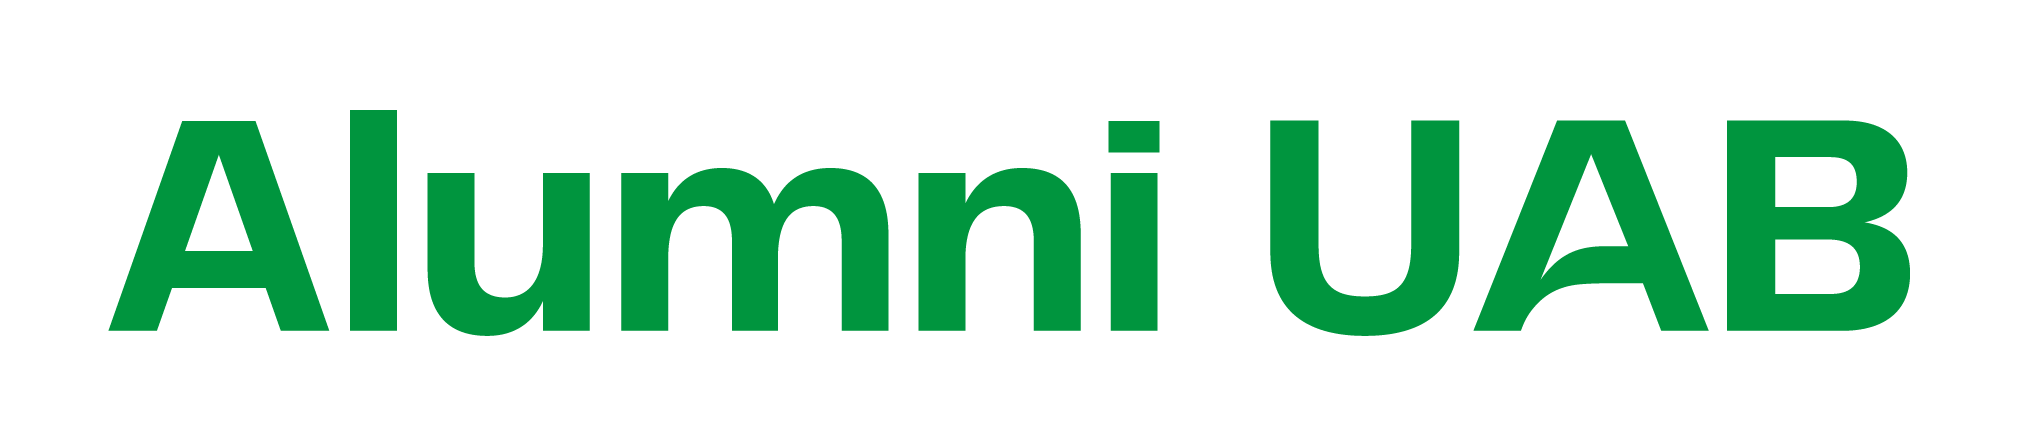 Logotip Alumni UAB verd